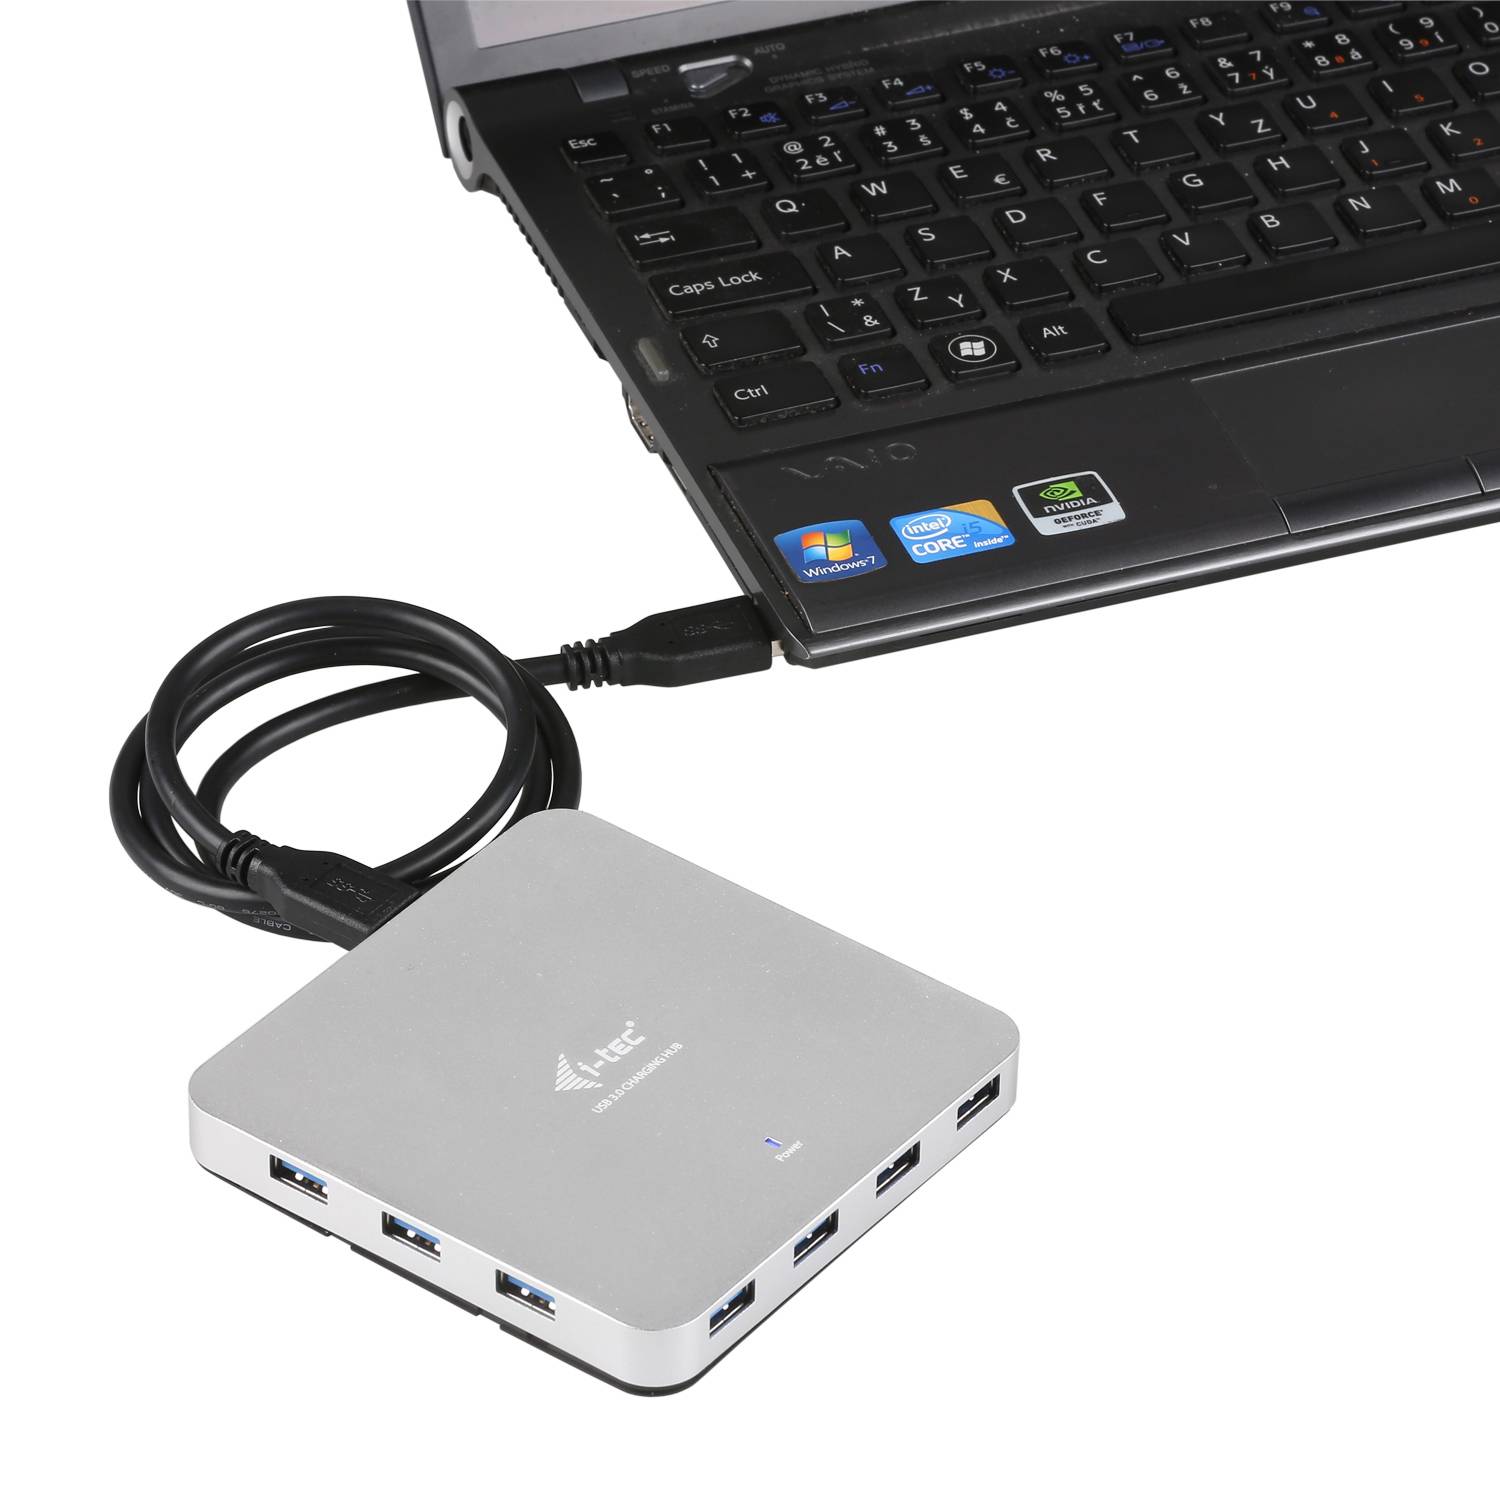 Rca Informatique - image du produit : I-TEC METAL ACTIVE HUB 10 PORT USB 3.0 WITH PS WIN MAC OS